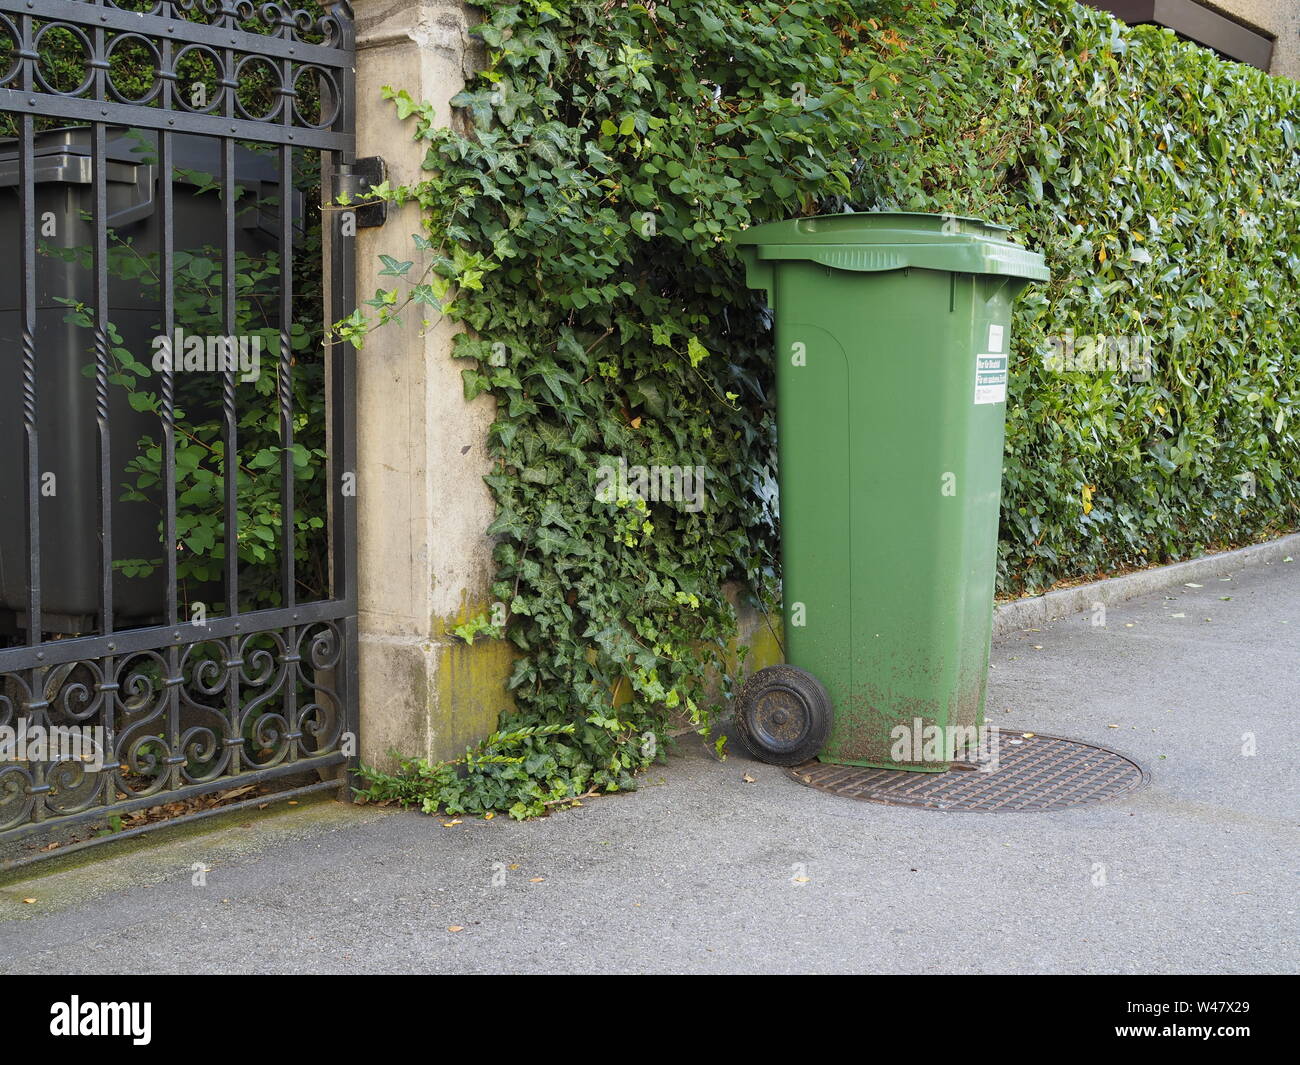 Kleiner Container für organische/pflanzliche Abfälle (Grüngut) in Zürich Stock Photo